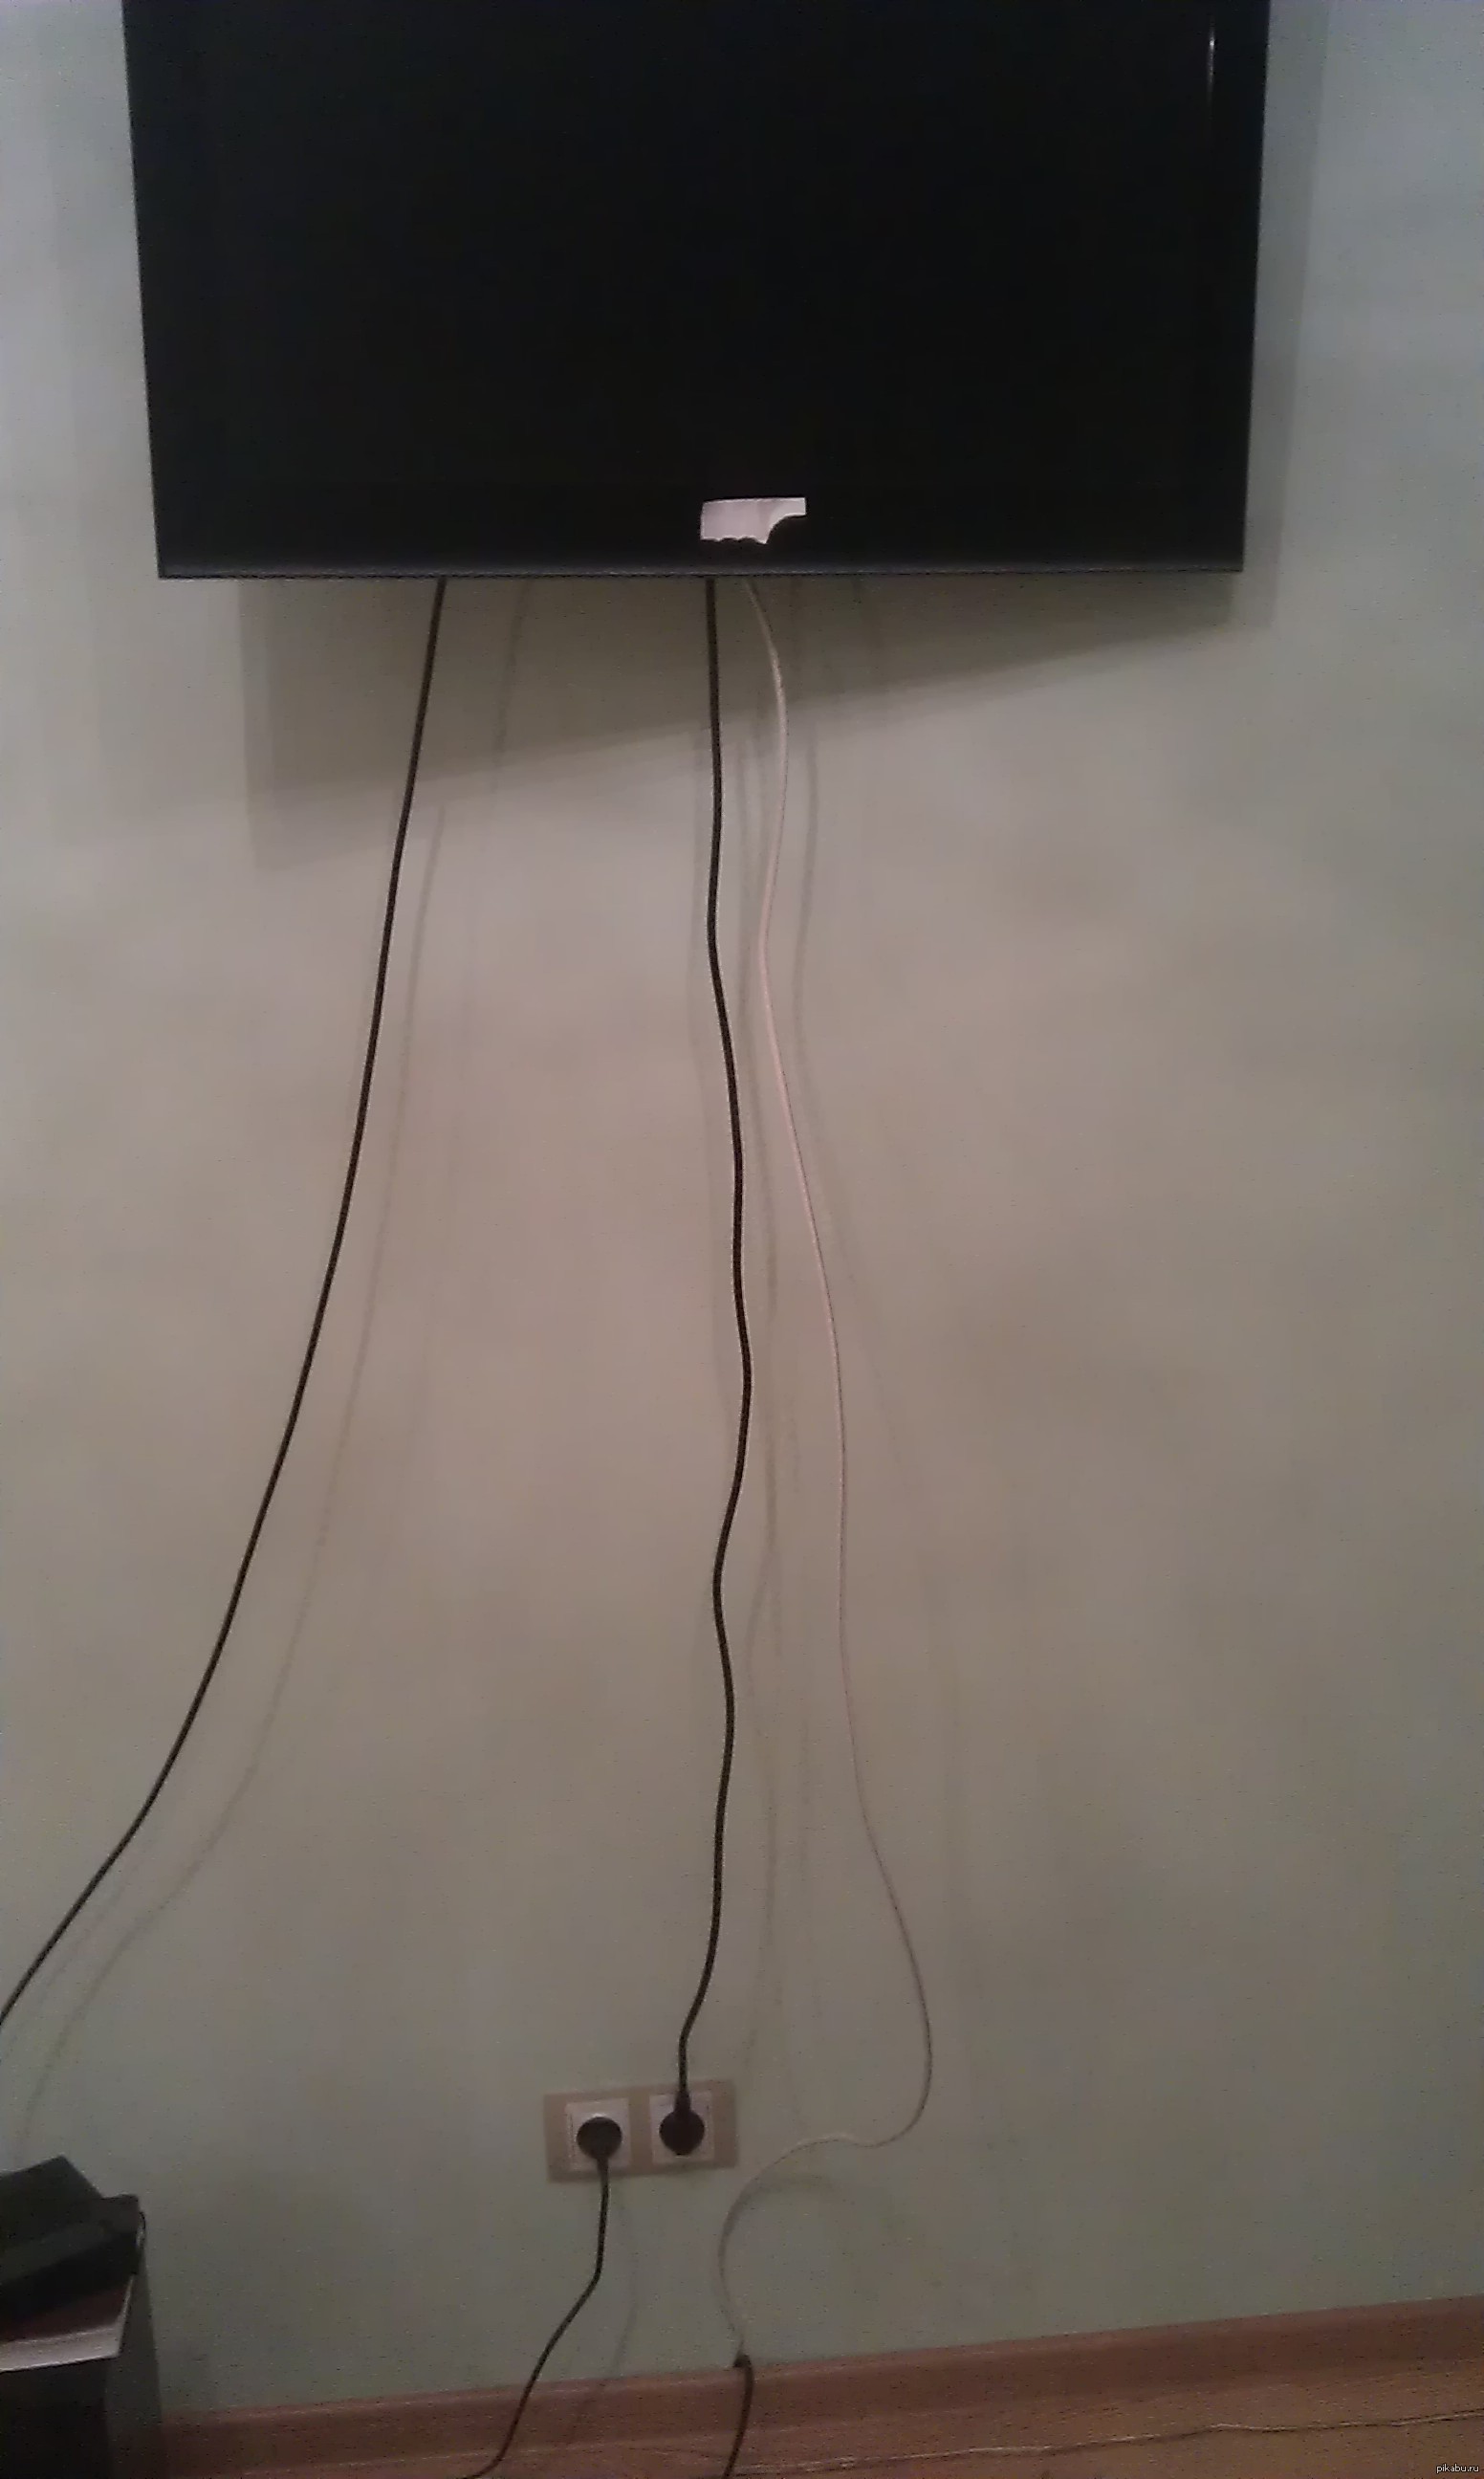 Шнур от телевизора на стене